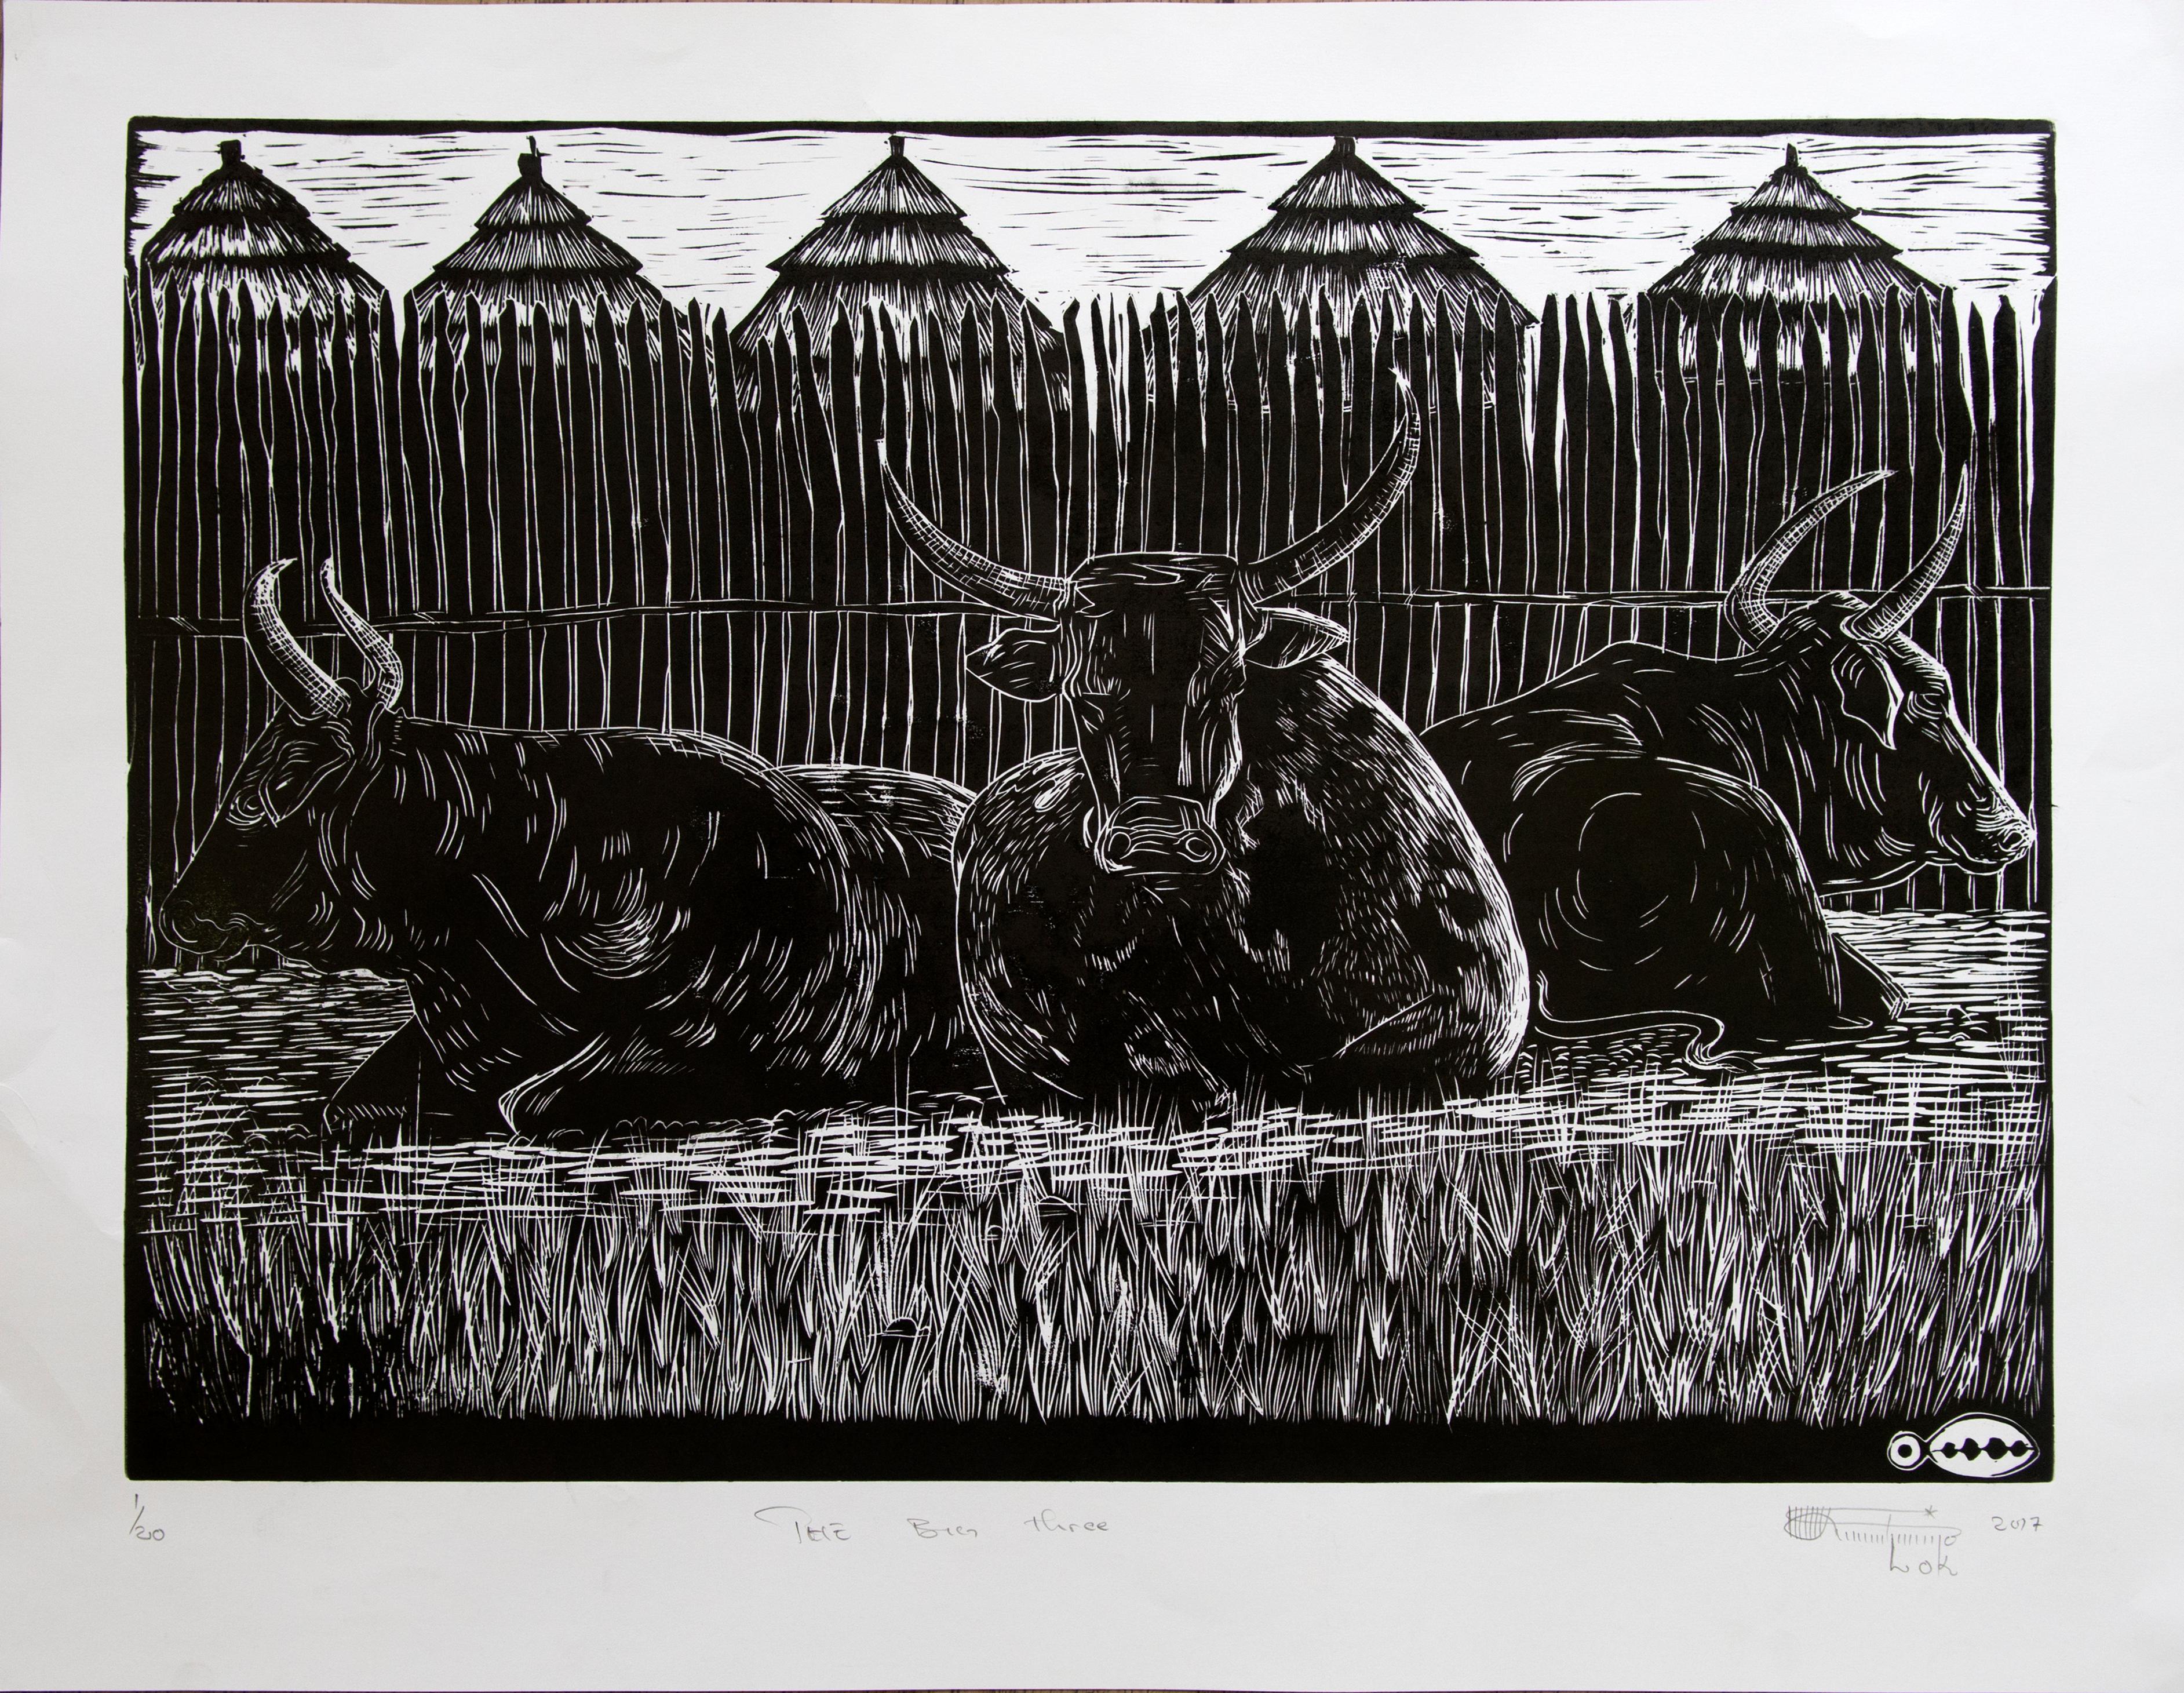 "The Big Three", est une gravure en noir et blanc réalisée par linogravure représentant trois grandes vaches. Dans cette gravure, Lok Kandjengo rend hommage à l'importance du bétail dans la vie de nombreux Namibiens qui en dépendent, non seulement